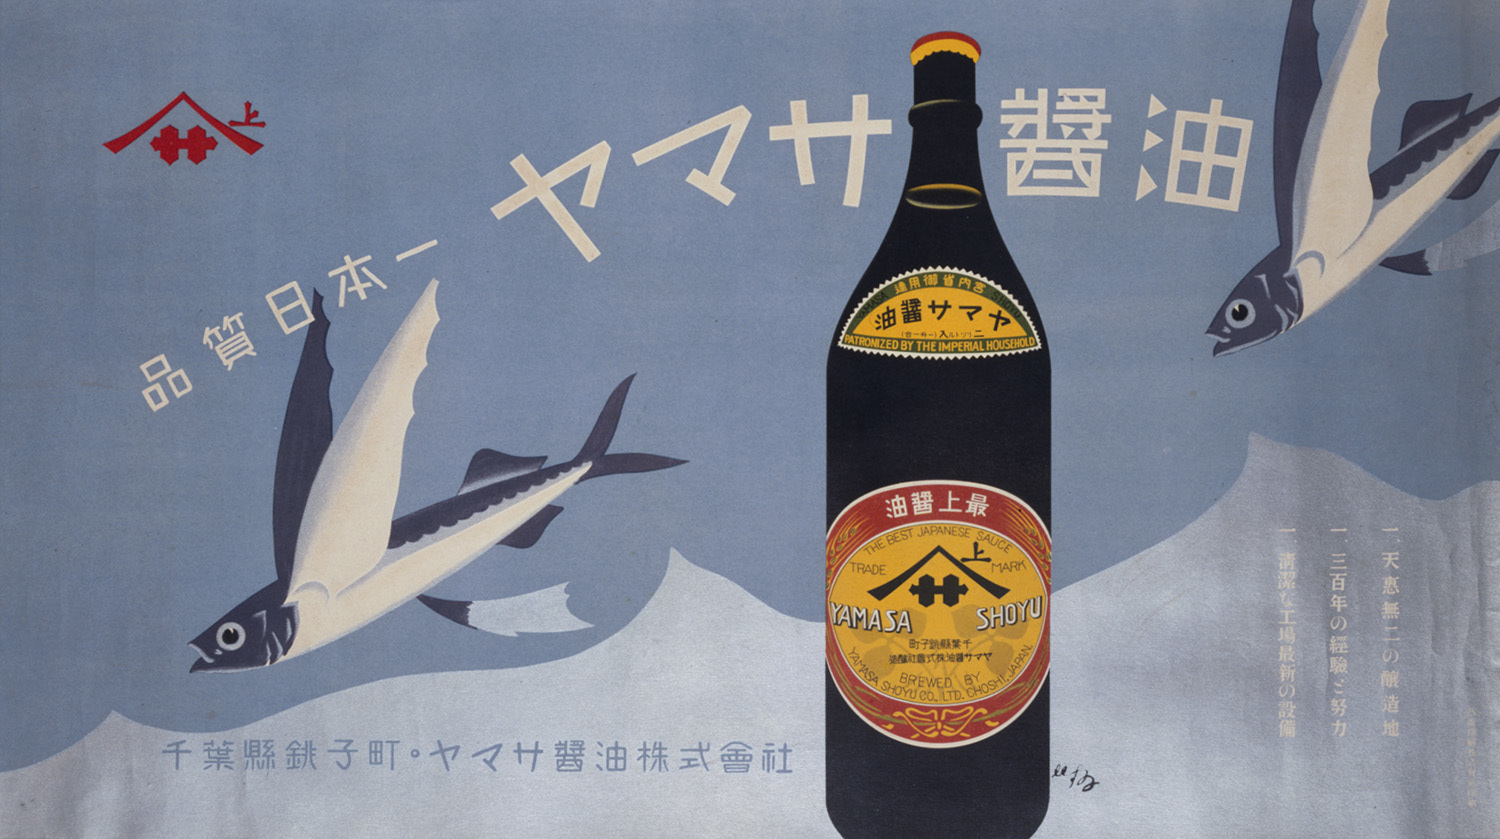 杉浦非水 《ヤマサ醤油》 1920 年代 東京国立近代美術館蔵